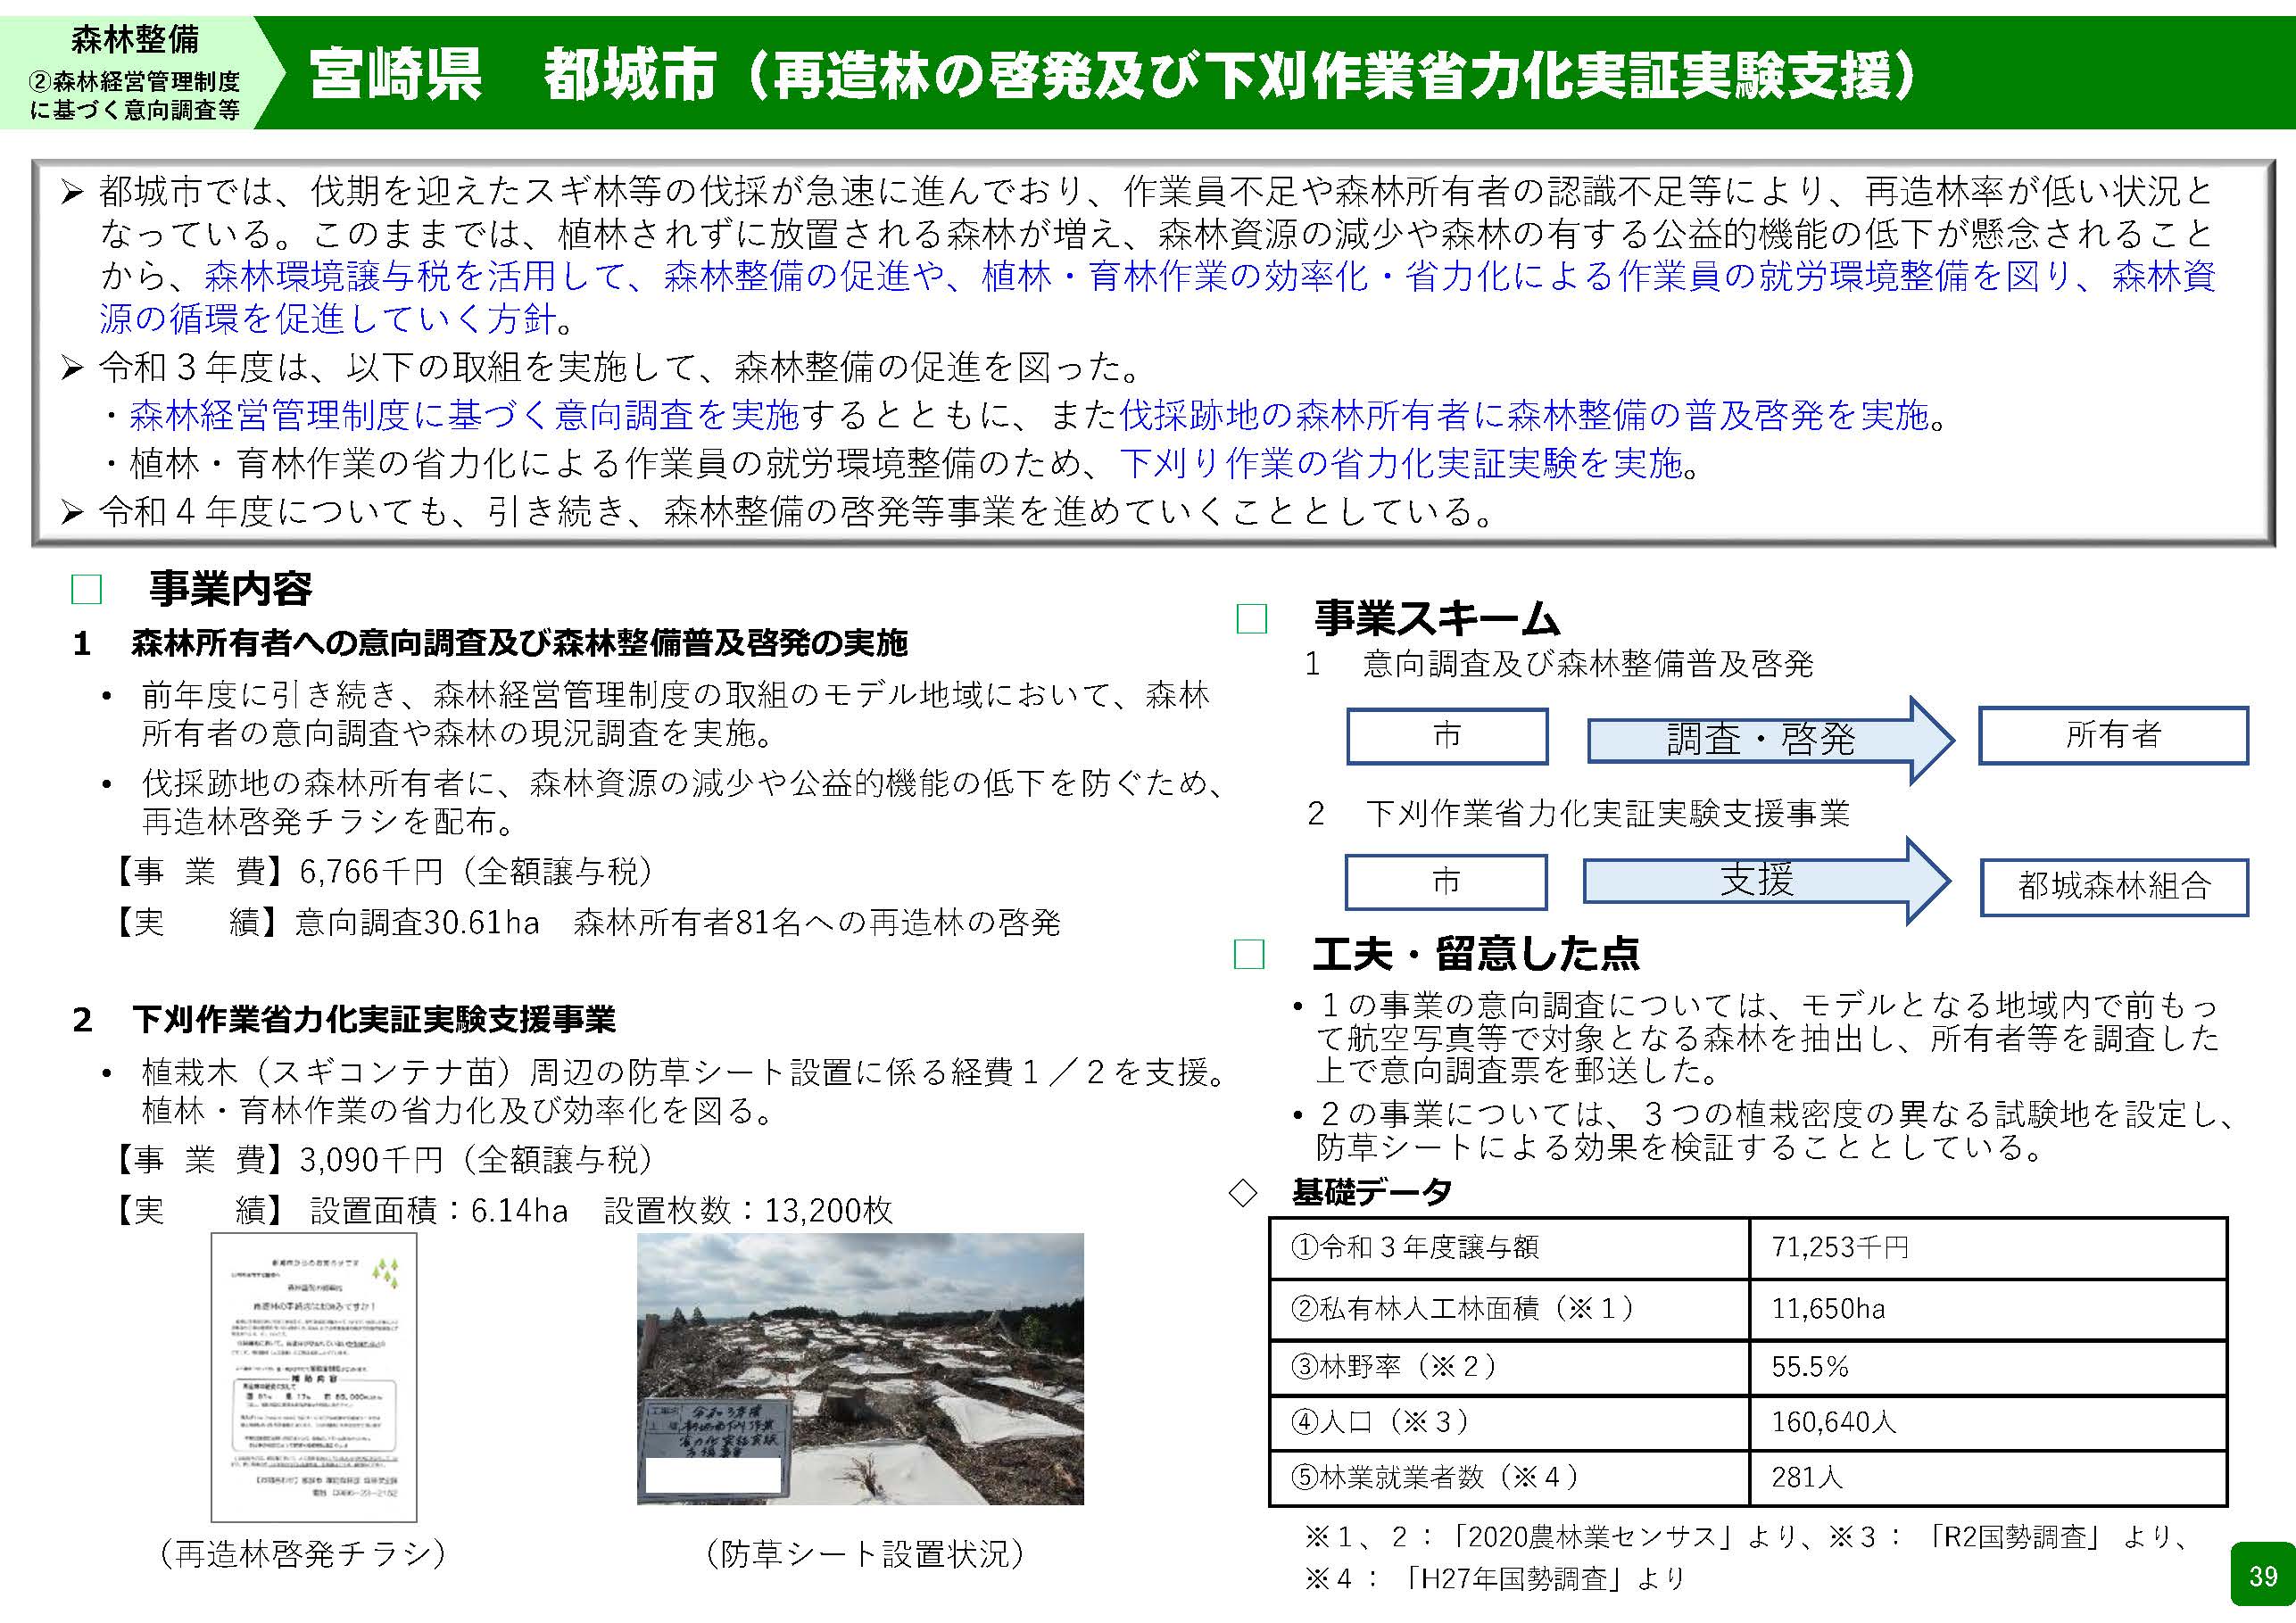 森林環境譲与税を活用した自治体の取組の紹介 Vol.6 宮崎県都城市